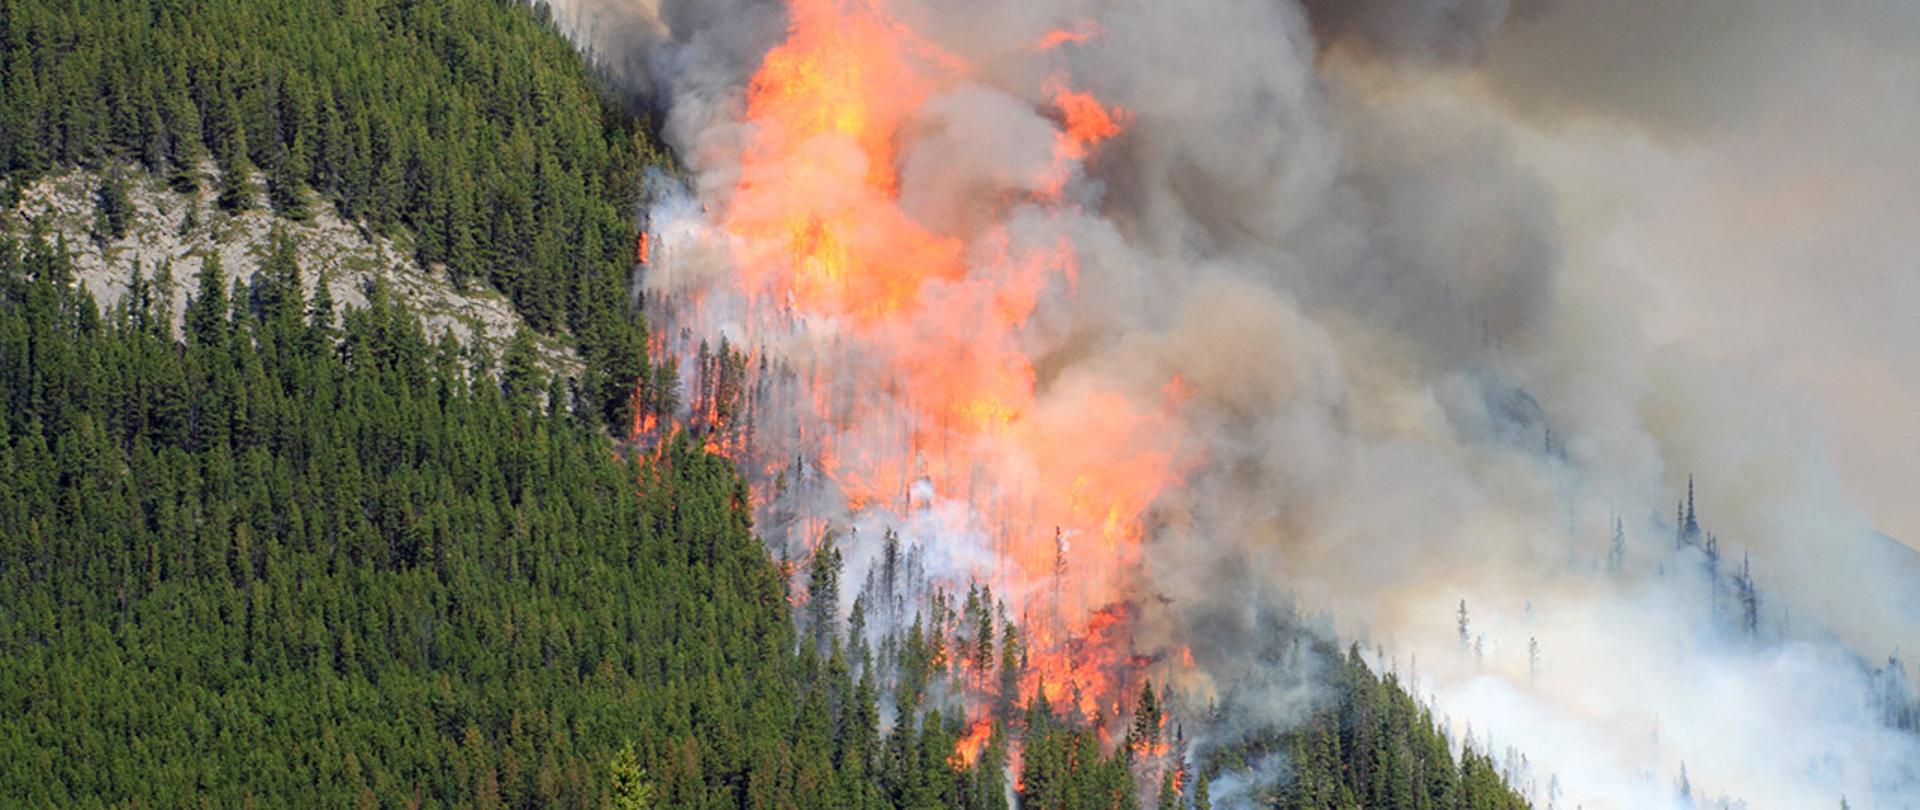 Zdjęcie przedstawia pożar lasu widziany z "lotu ptaka" i dużo dymu